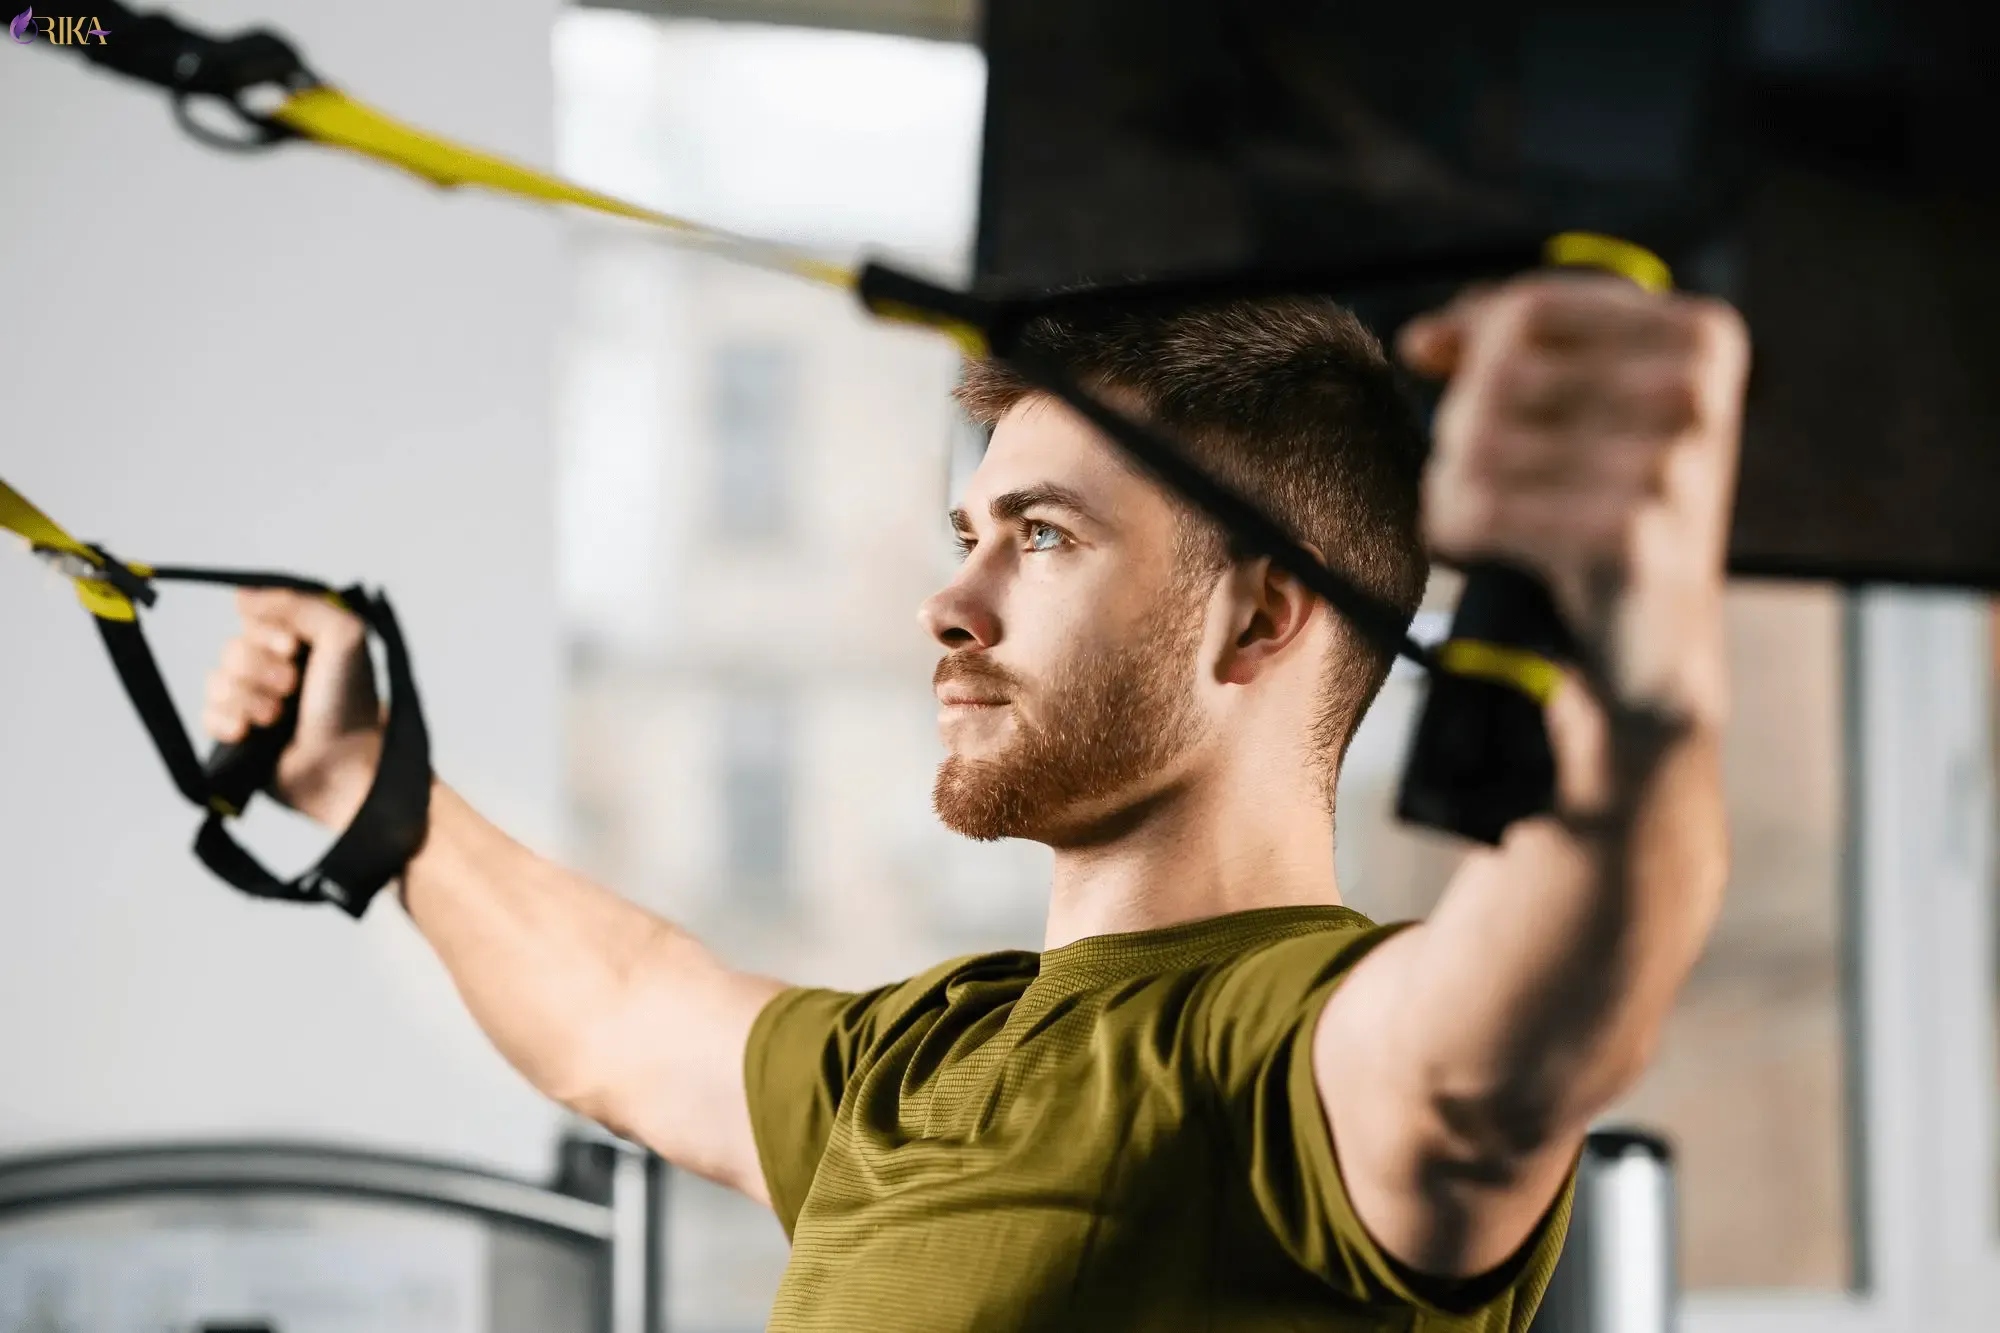 تمرینات TRX: این تمرینات با استفاده از تسمه های TRX انجام می شوند و به شما کمک می کنند تا عضلات تان را به طور متعادل و کارآمد تقویت کنید. 